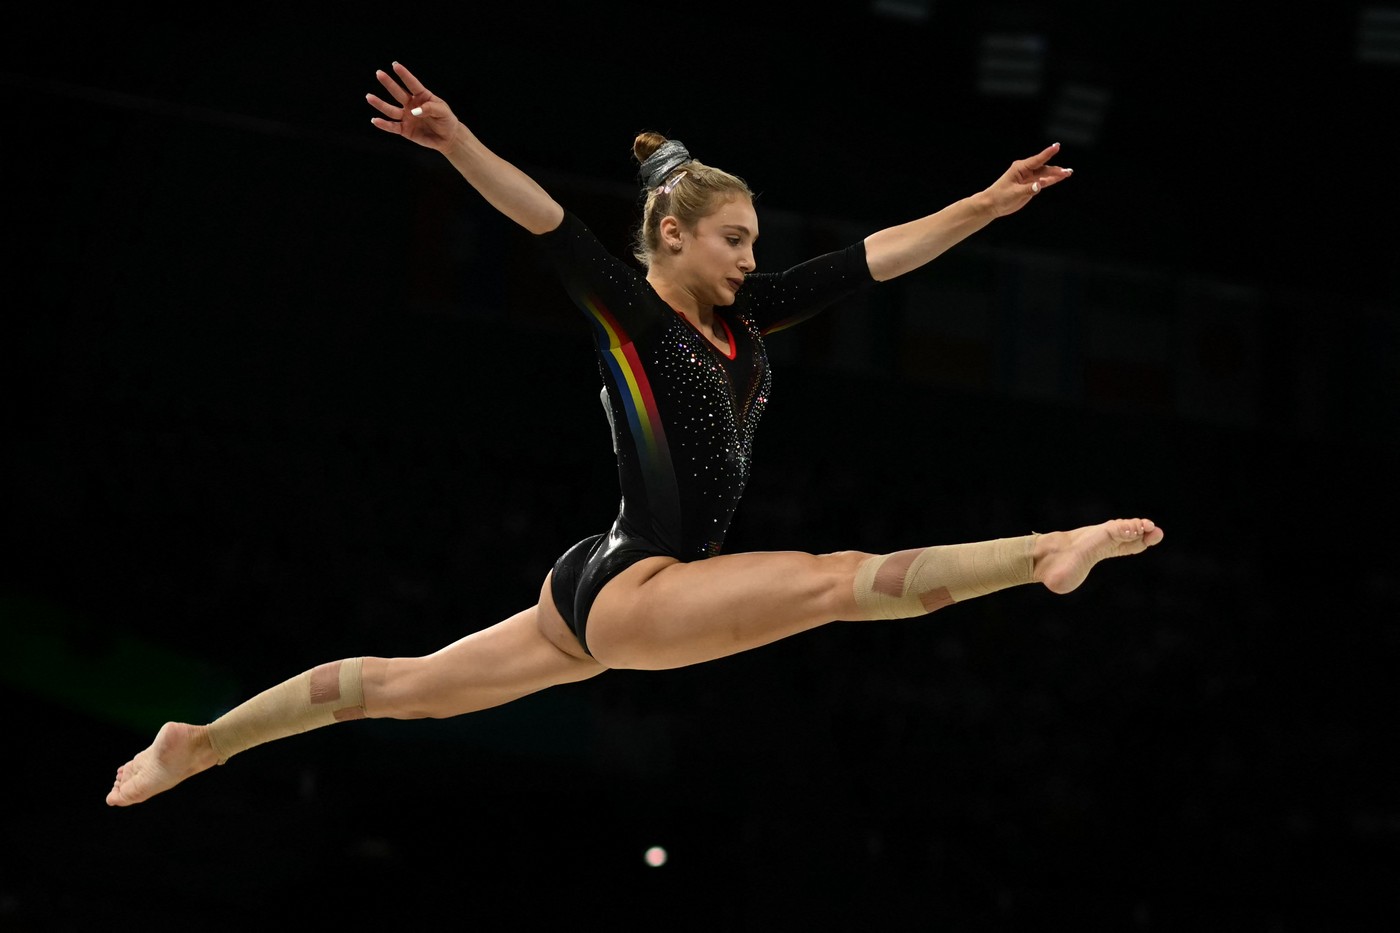 România, din nou în finală la gimnastică la Jocurile Olimpice, după 12 ani! Sabrina ”The Sensation” Voinea, numărul 1